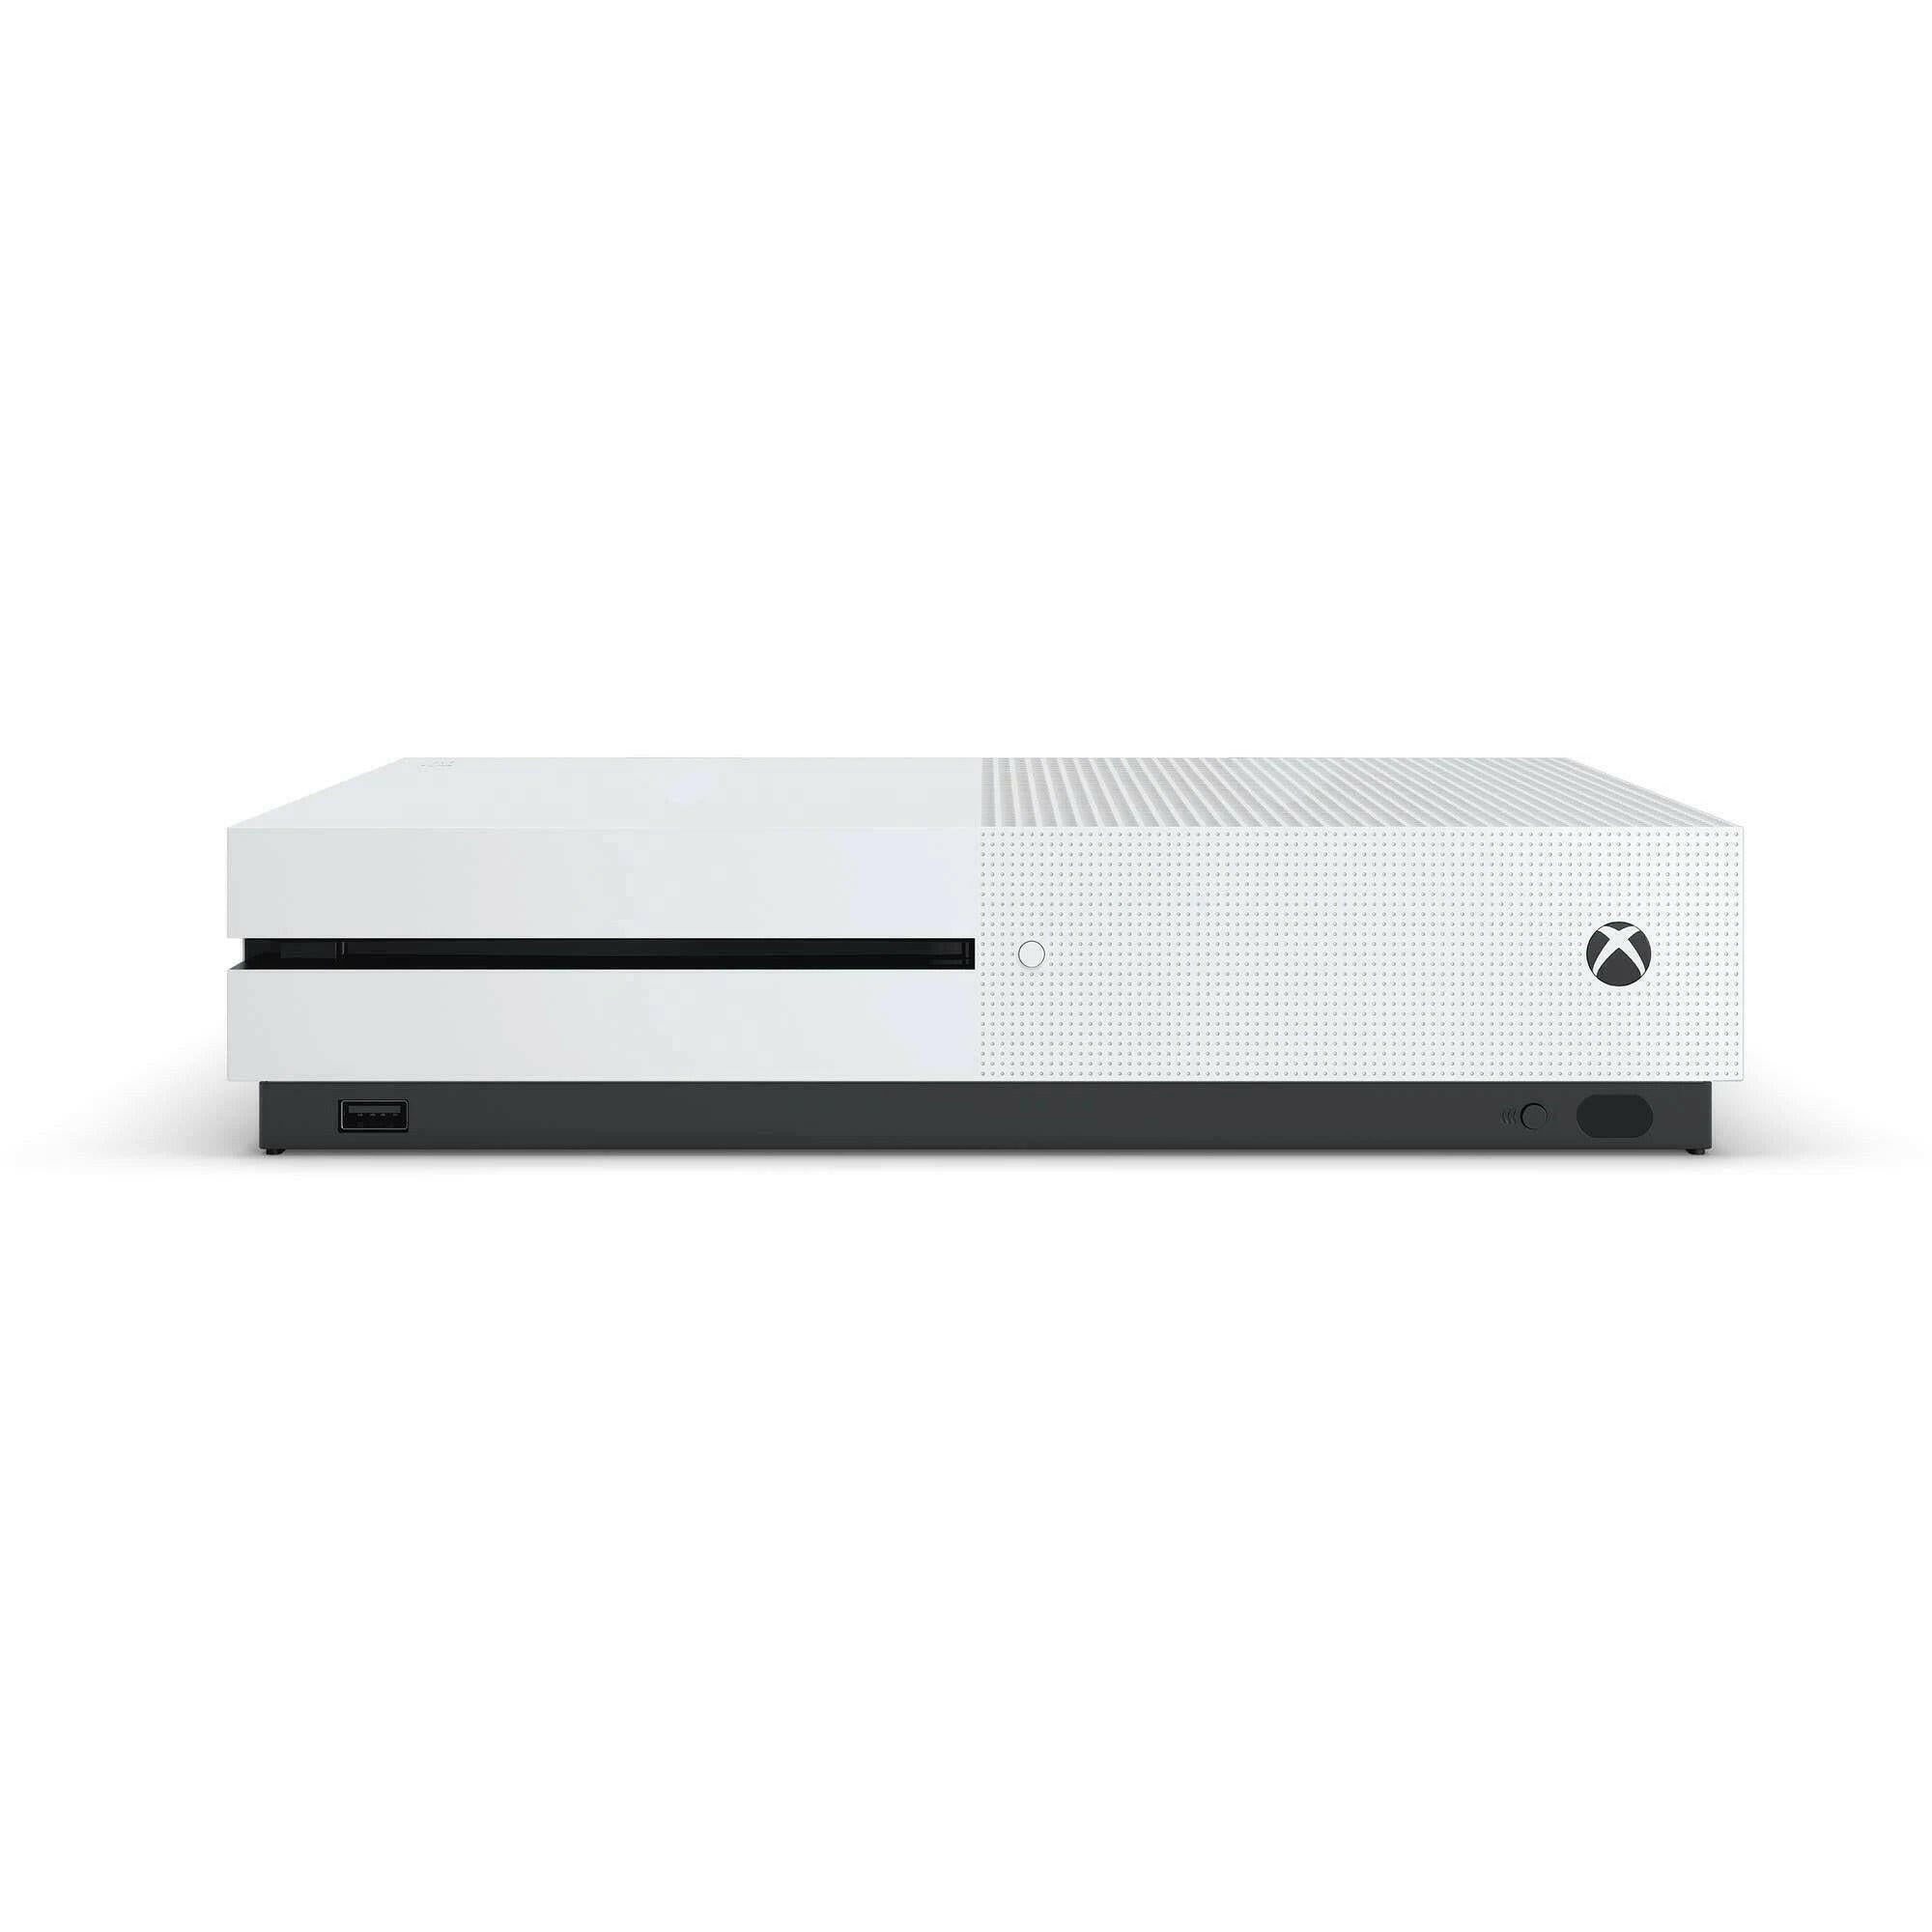 Microsoft Xbox One S 1TB Console - White ** no controller**